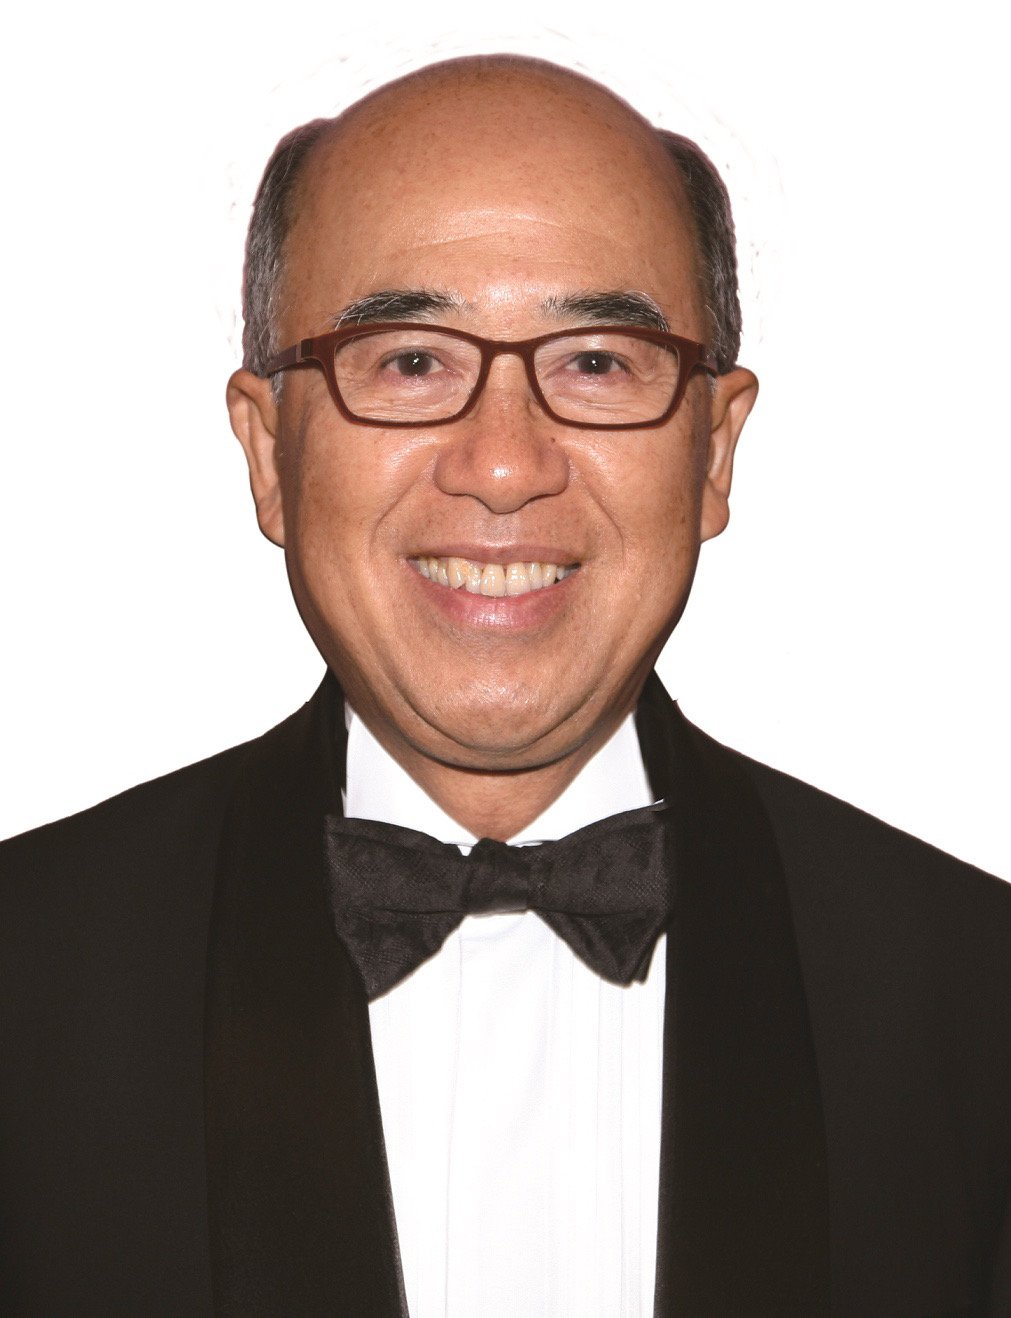 PDG Peter Wong 黃紹開 – DG 2007-2008